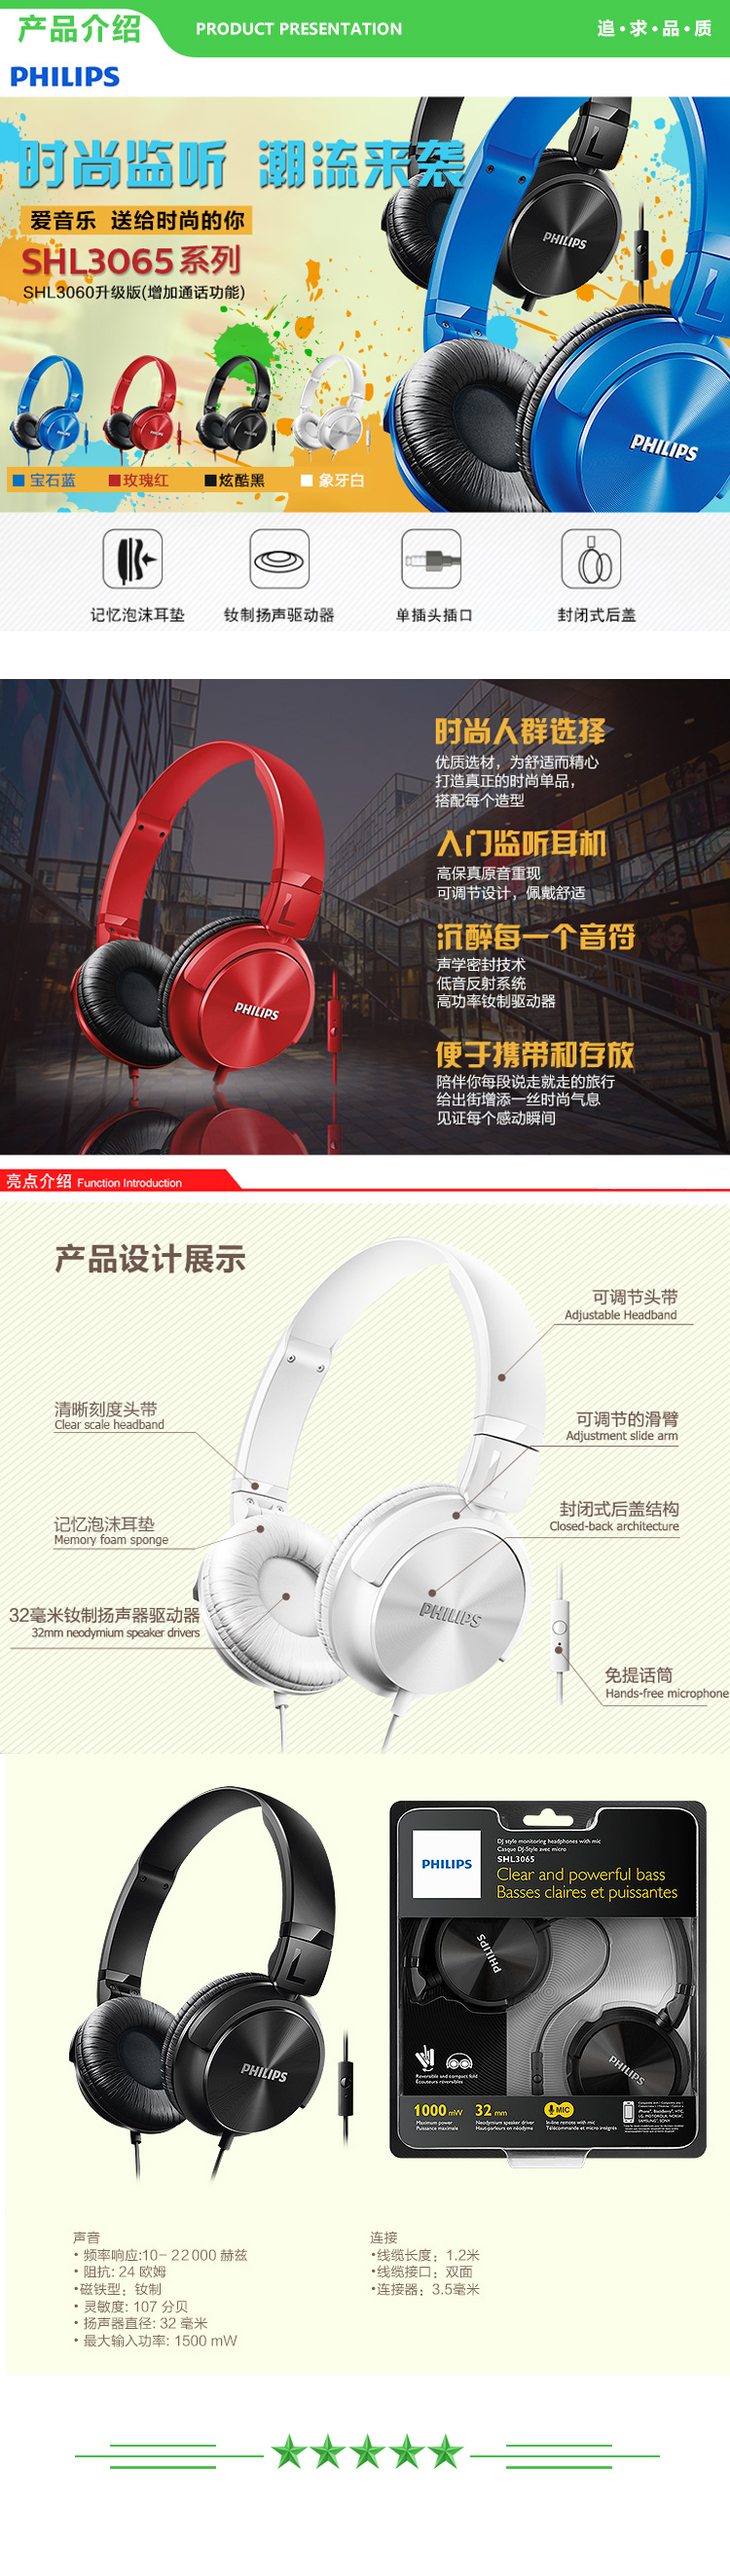 飞利浦 PHILIPS SHL3065 头戴式耳机 有线 游戏竞技吃鸡线控 柔软可折叠3.5mm音频接口 黑 .jpg